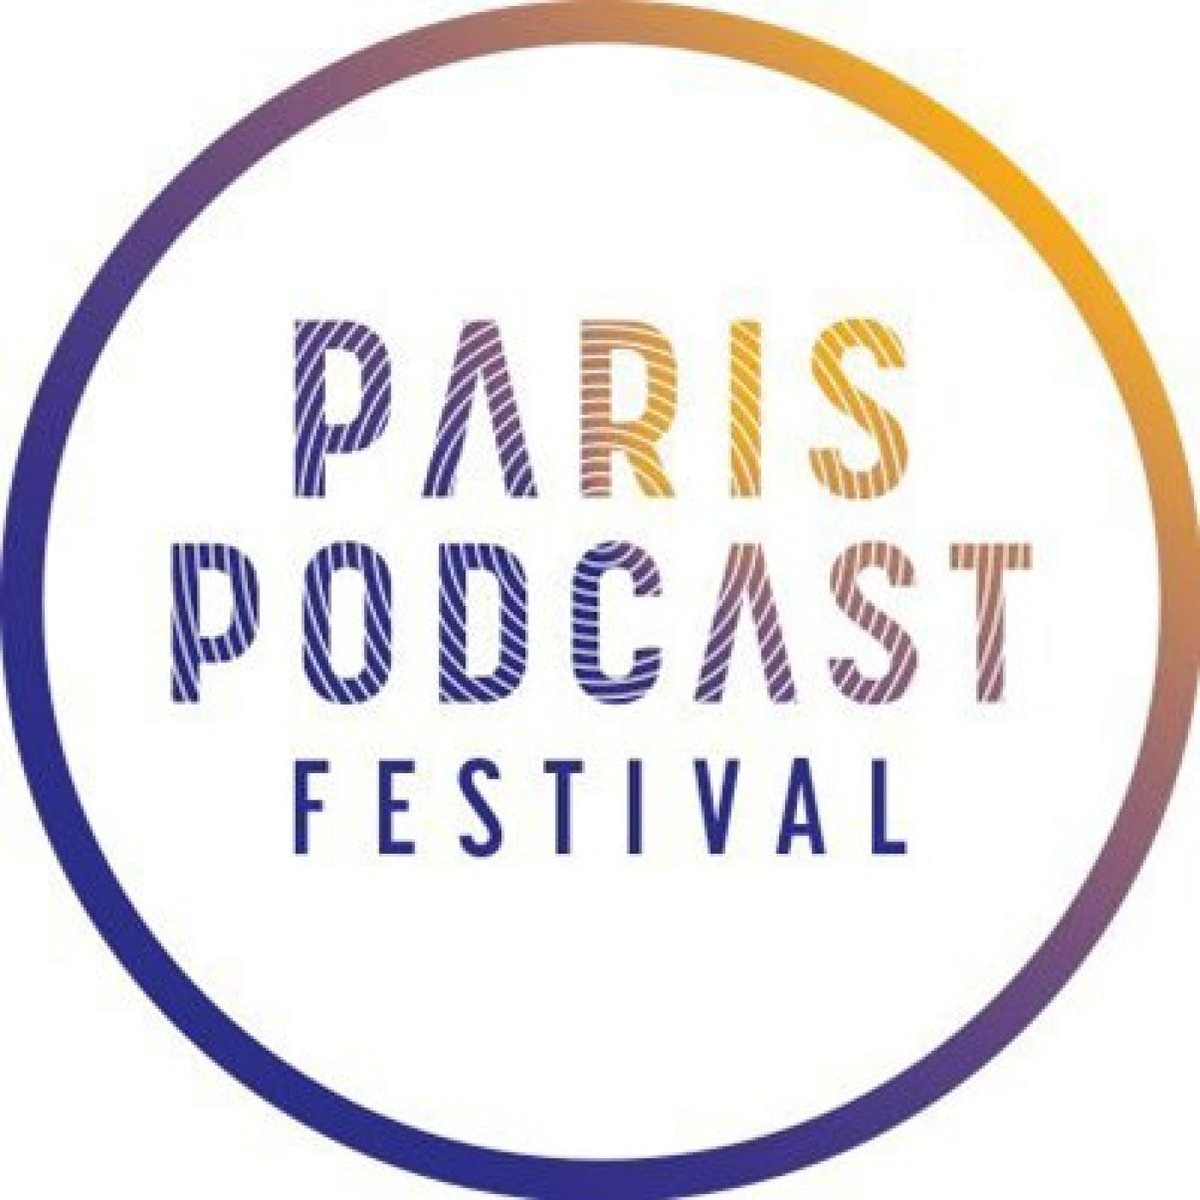 [PARIS PODCAST FESTIVAL] Le podcast doit-il être gratuit et disponible partout ? 

Retrouvez aujourd'hui notre directrice @fannierascle à la journée pro du @PodcastParis ! 🎧

📅 RDV à la table ronde 'Gratuité et diffusion : positionnement et évolution des usages' à 16h30 !